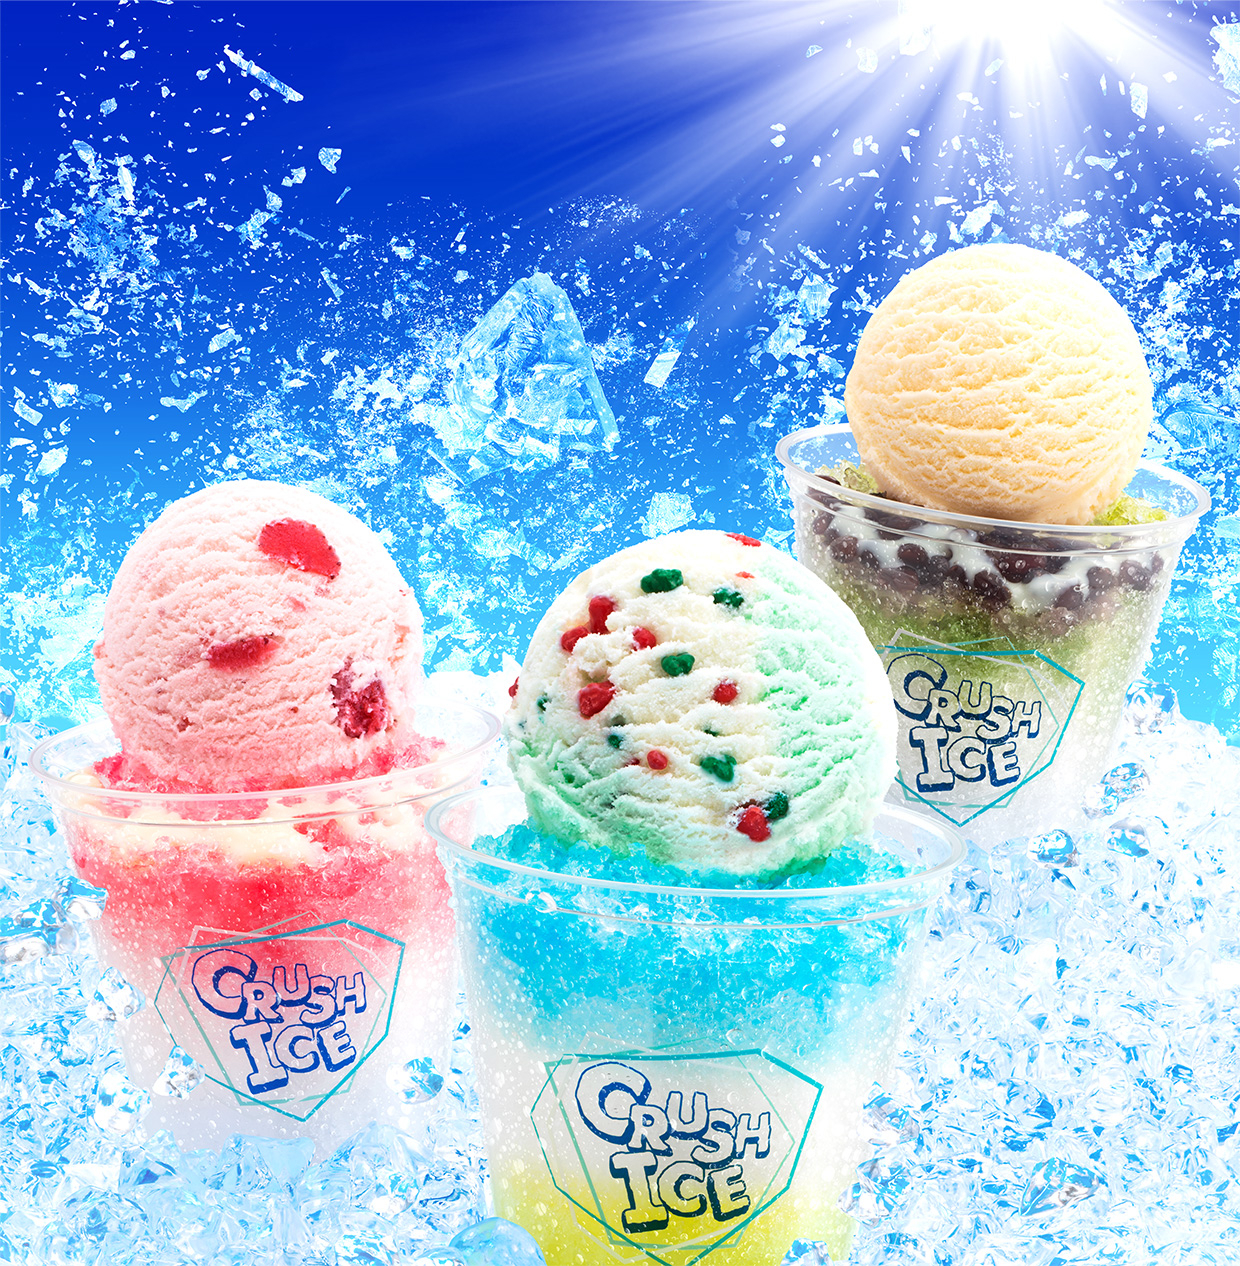 アイスクリームとザクザク氷の組み合わせがたまらない美味しさ クラッシュアイス B R サーティワン アイスクリーム株式会社のプレスリリース